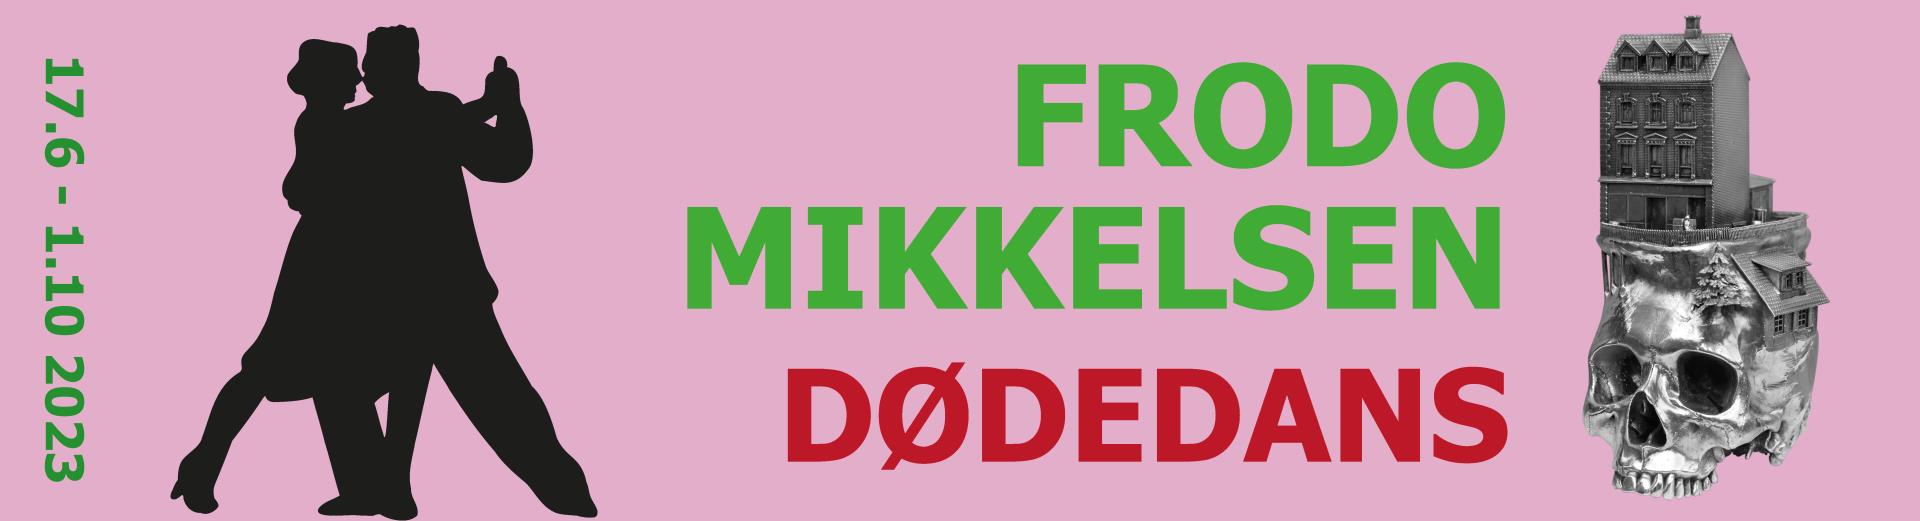 Frodo Mikkelsen - Dødedans